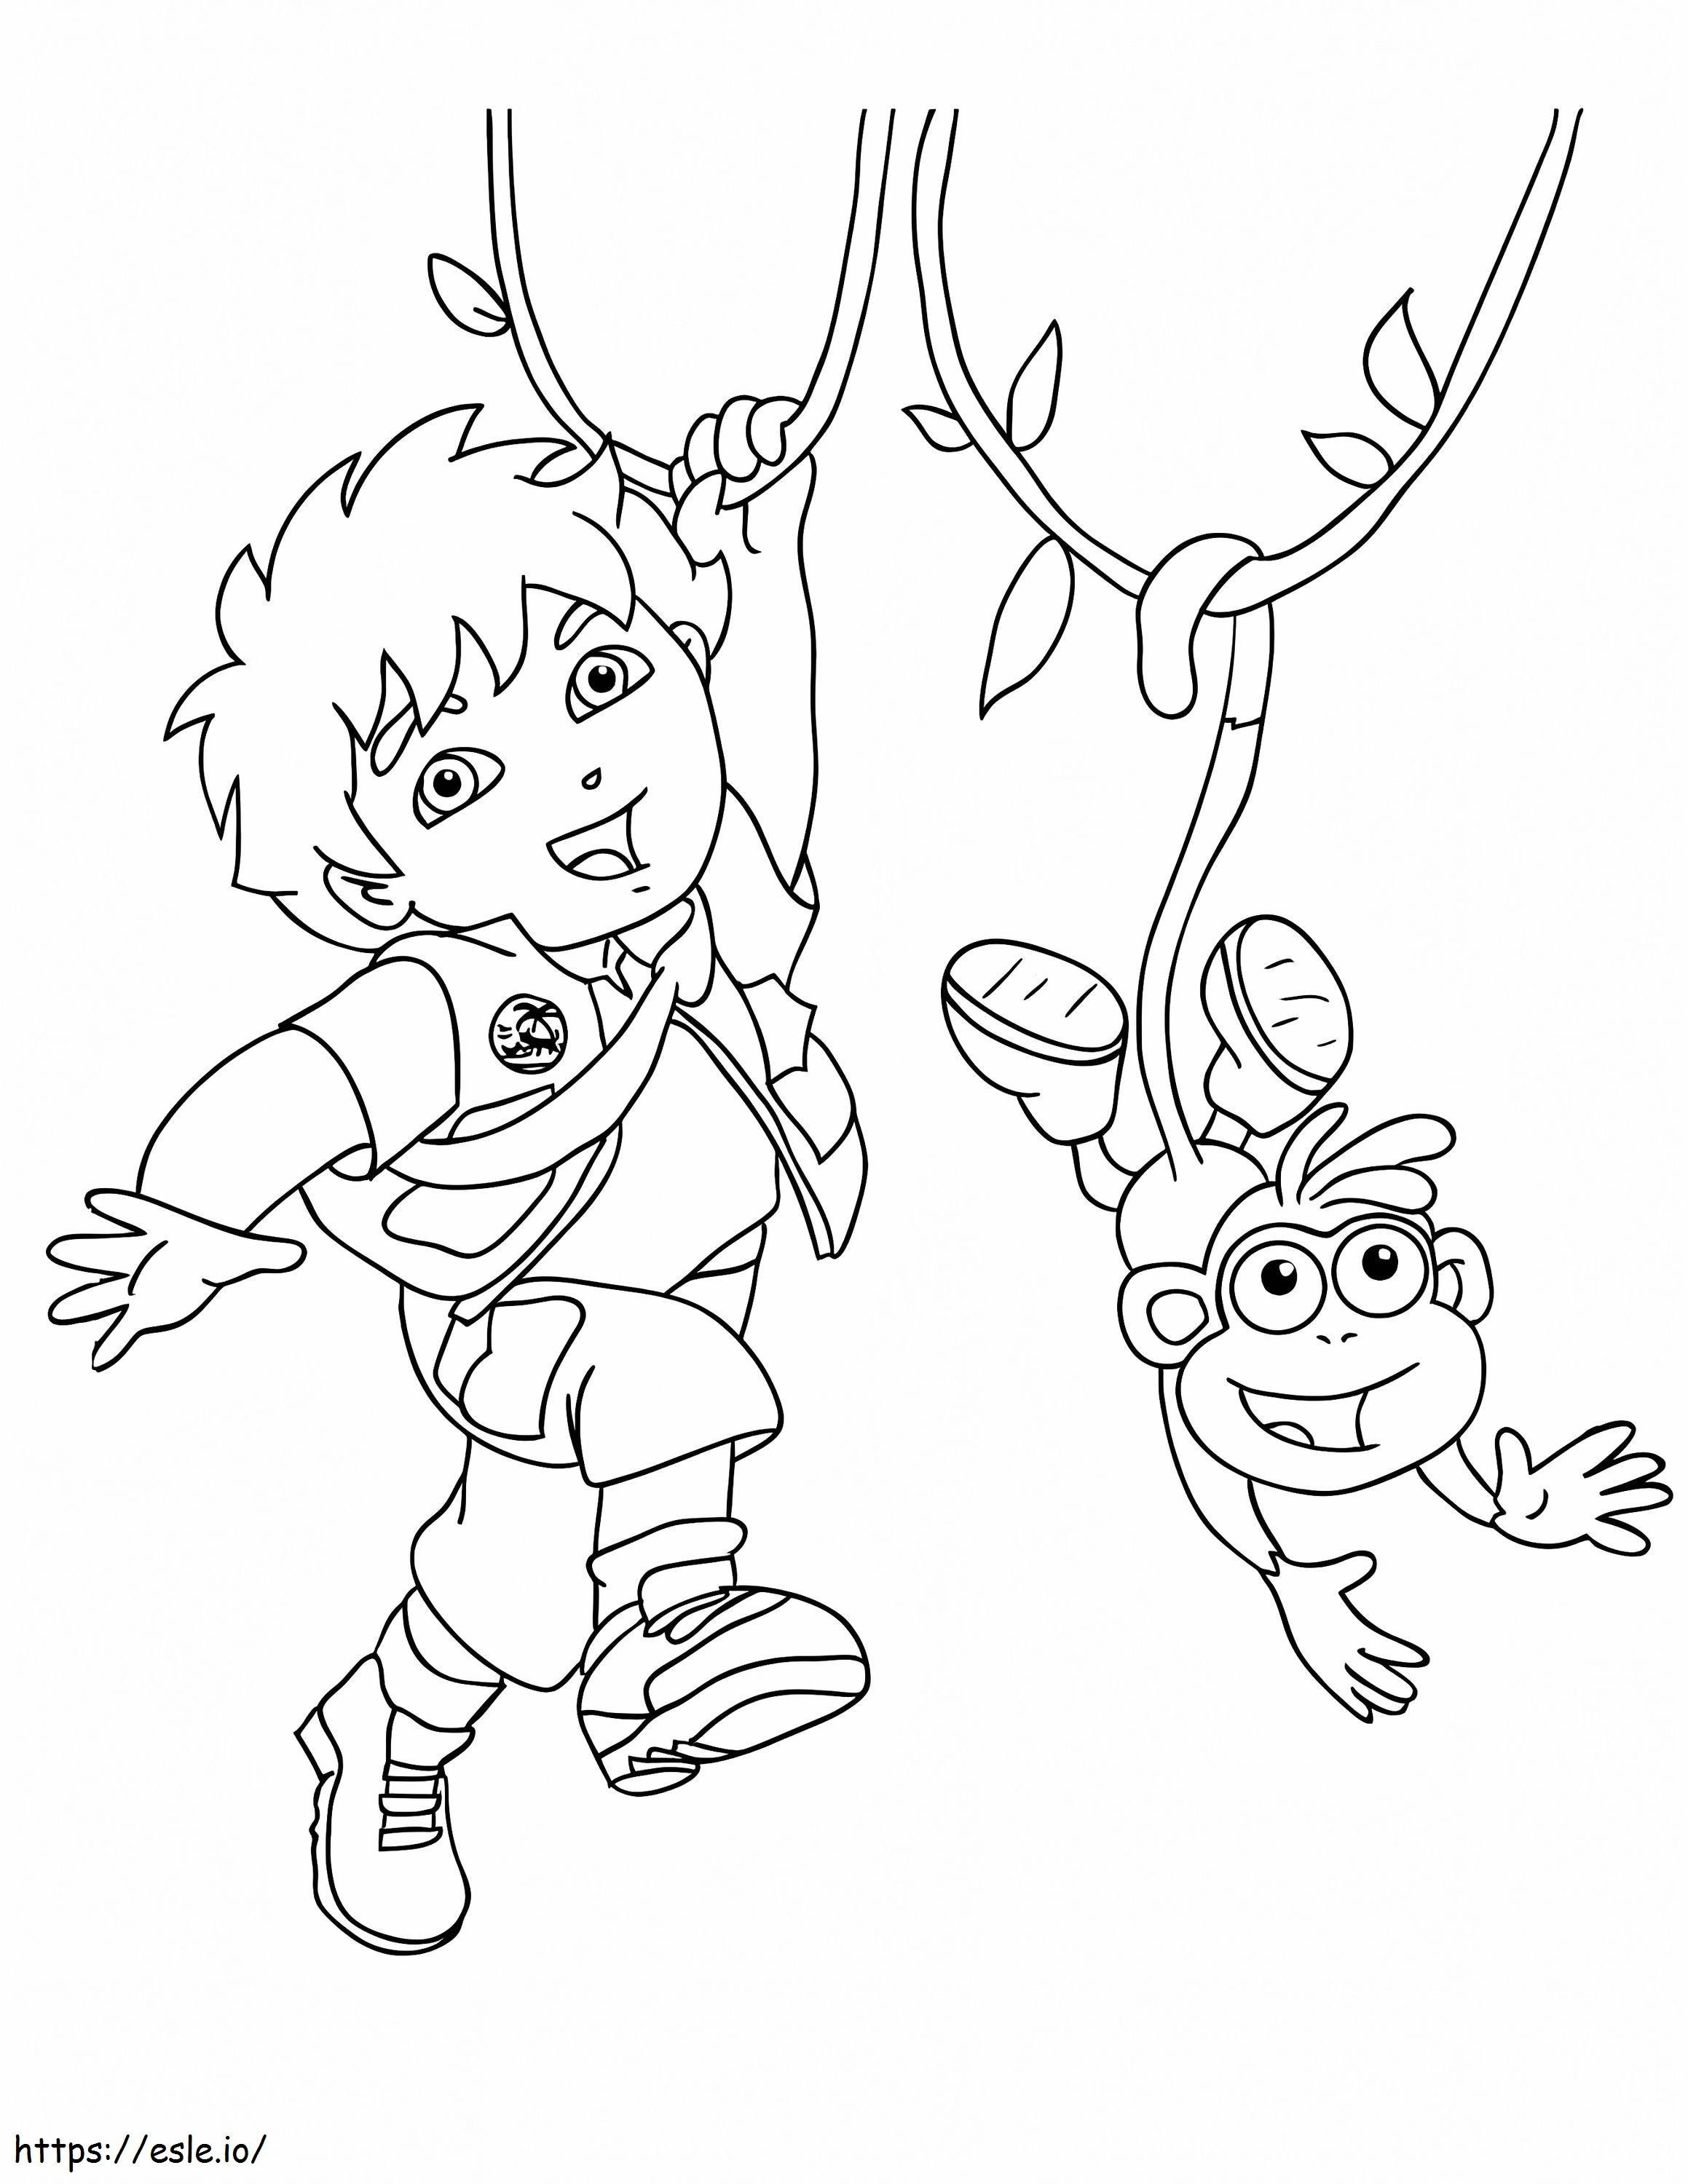 Diego ja apina kiipeily värityskuva